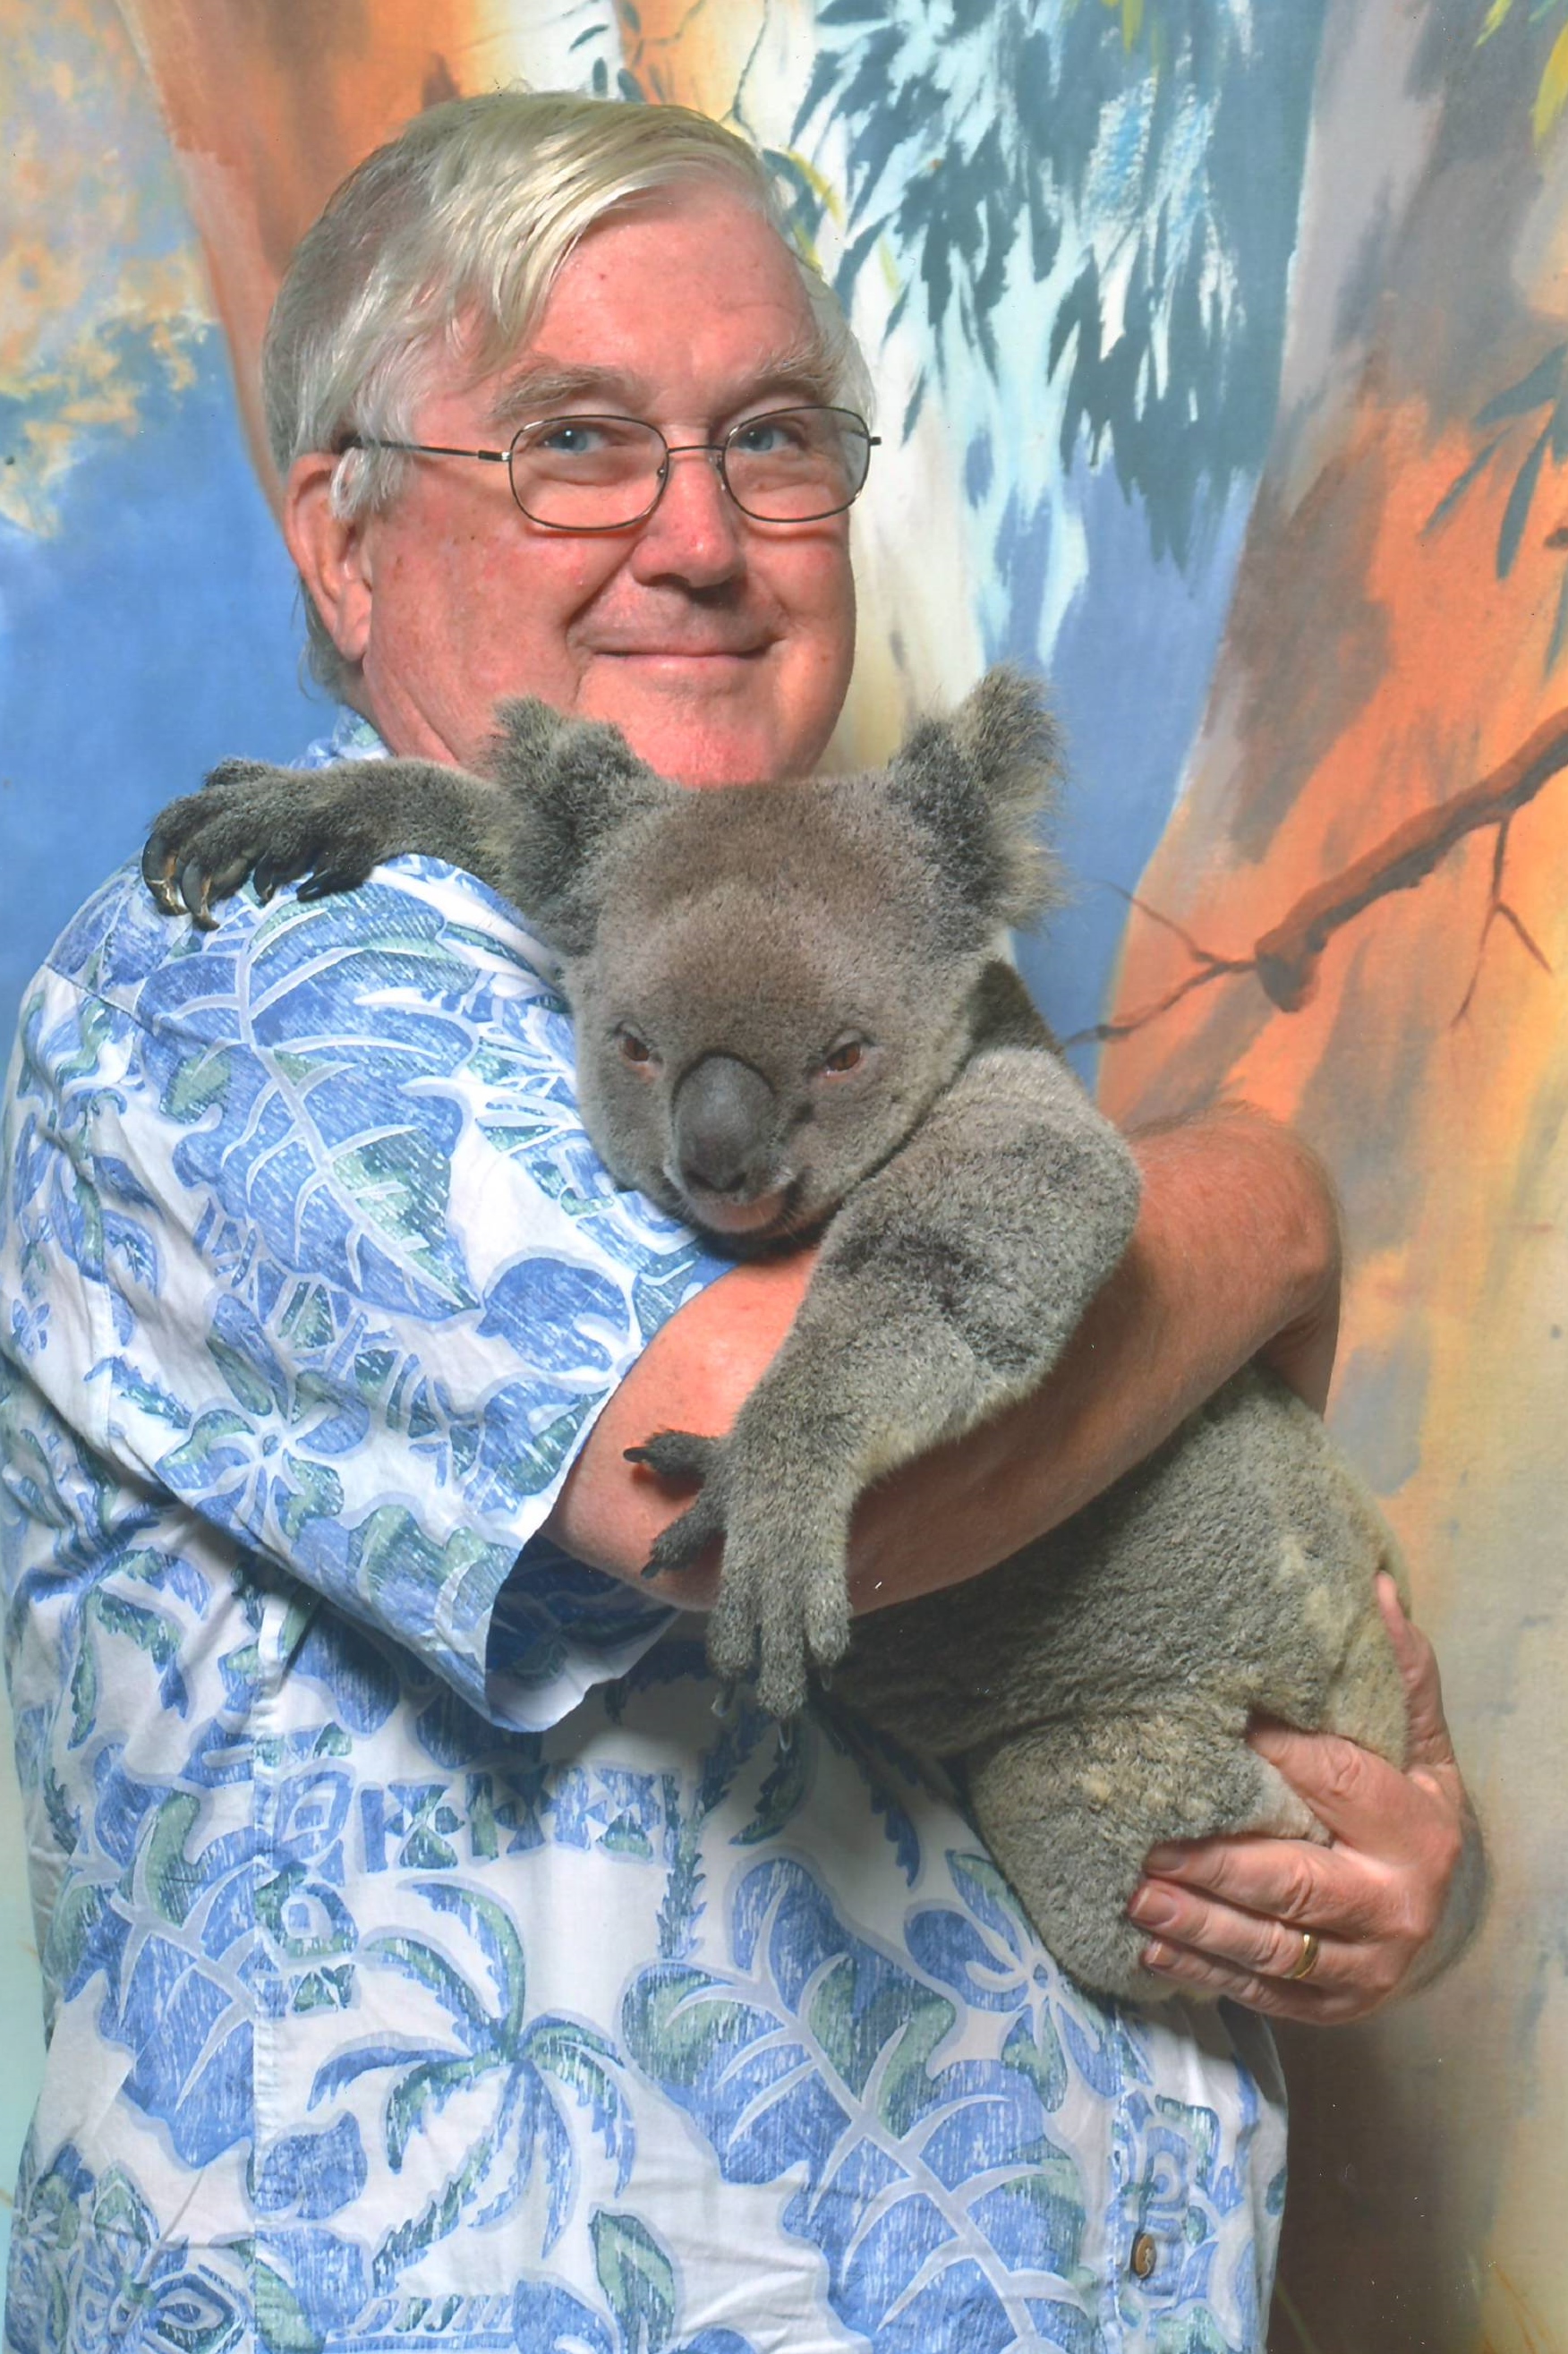 koala 2